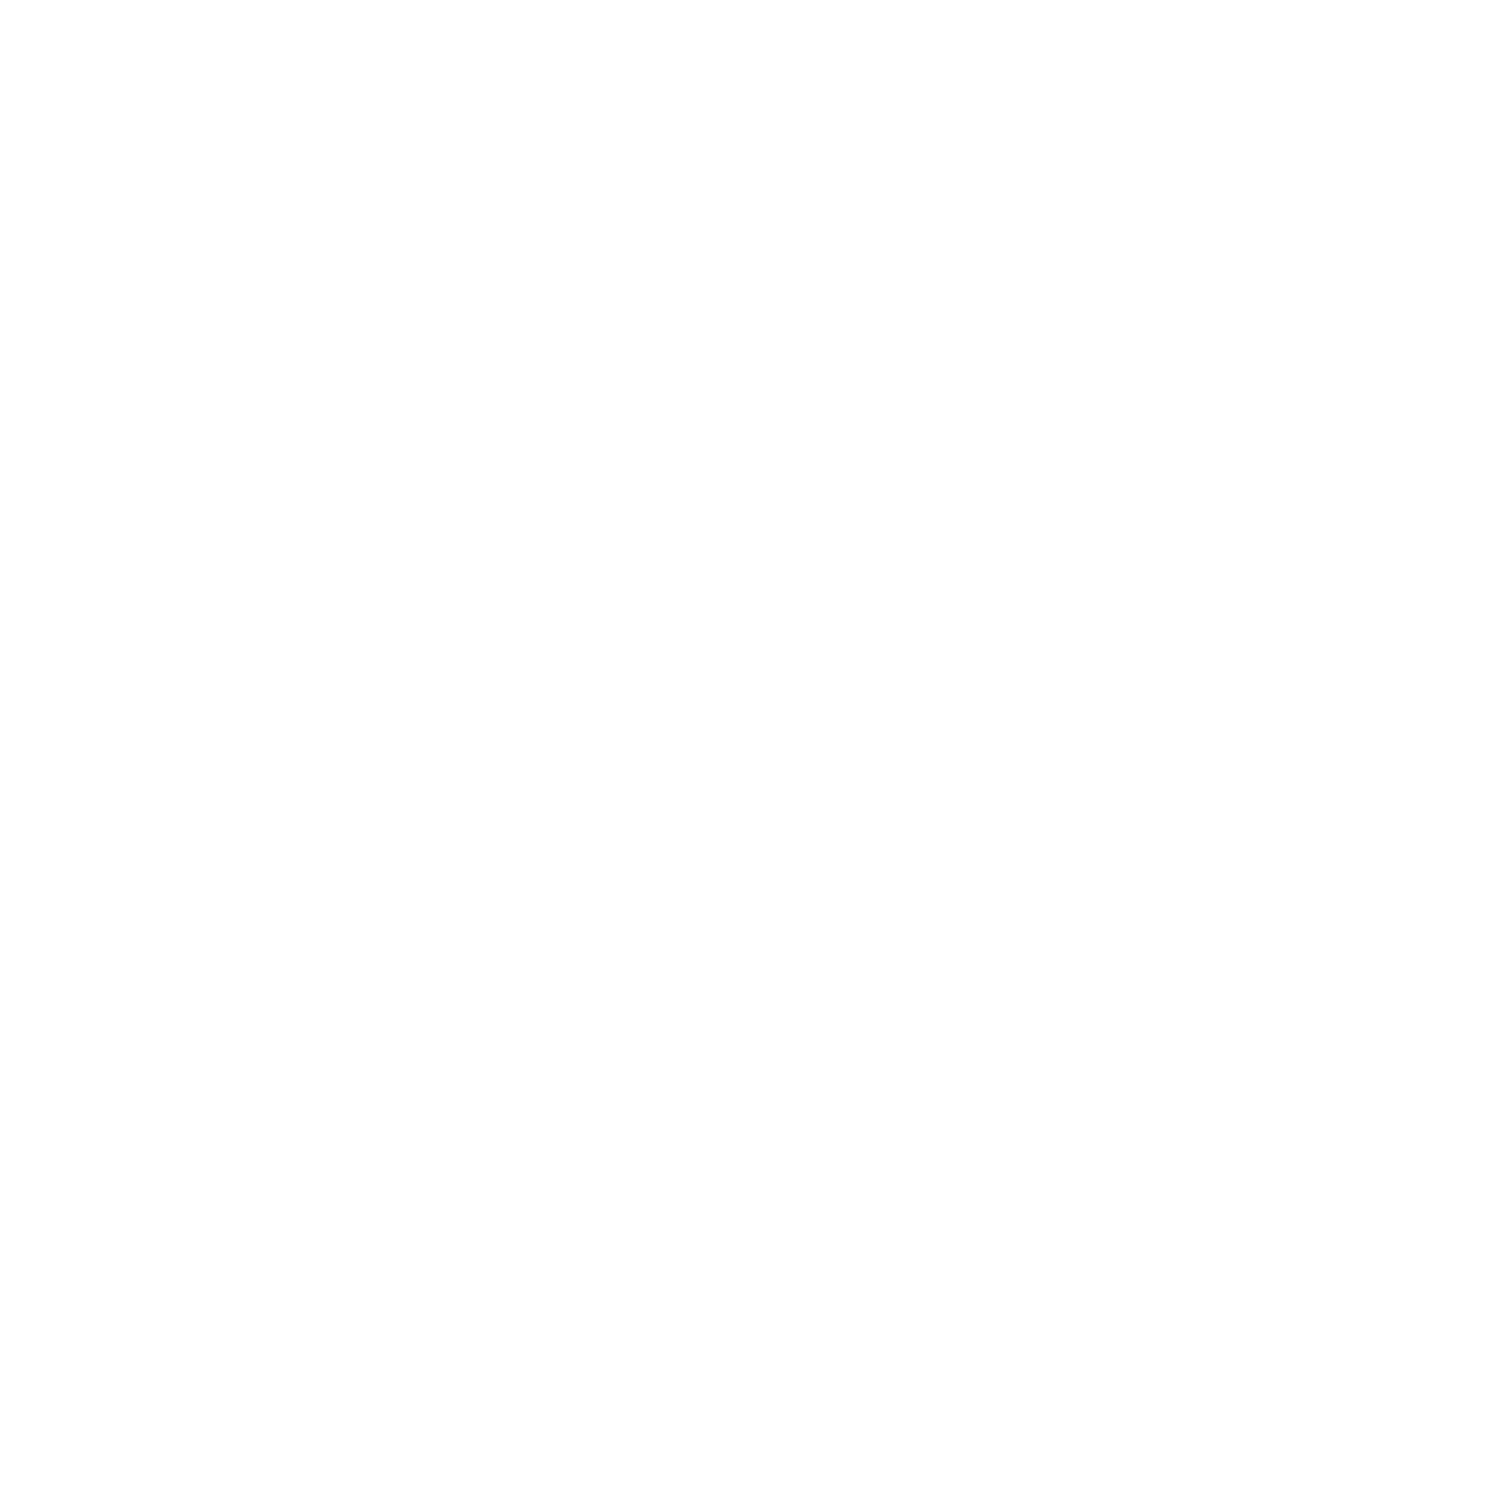 Picnic Leland